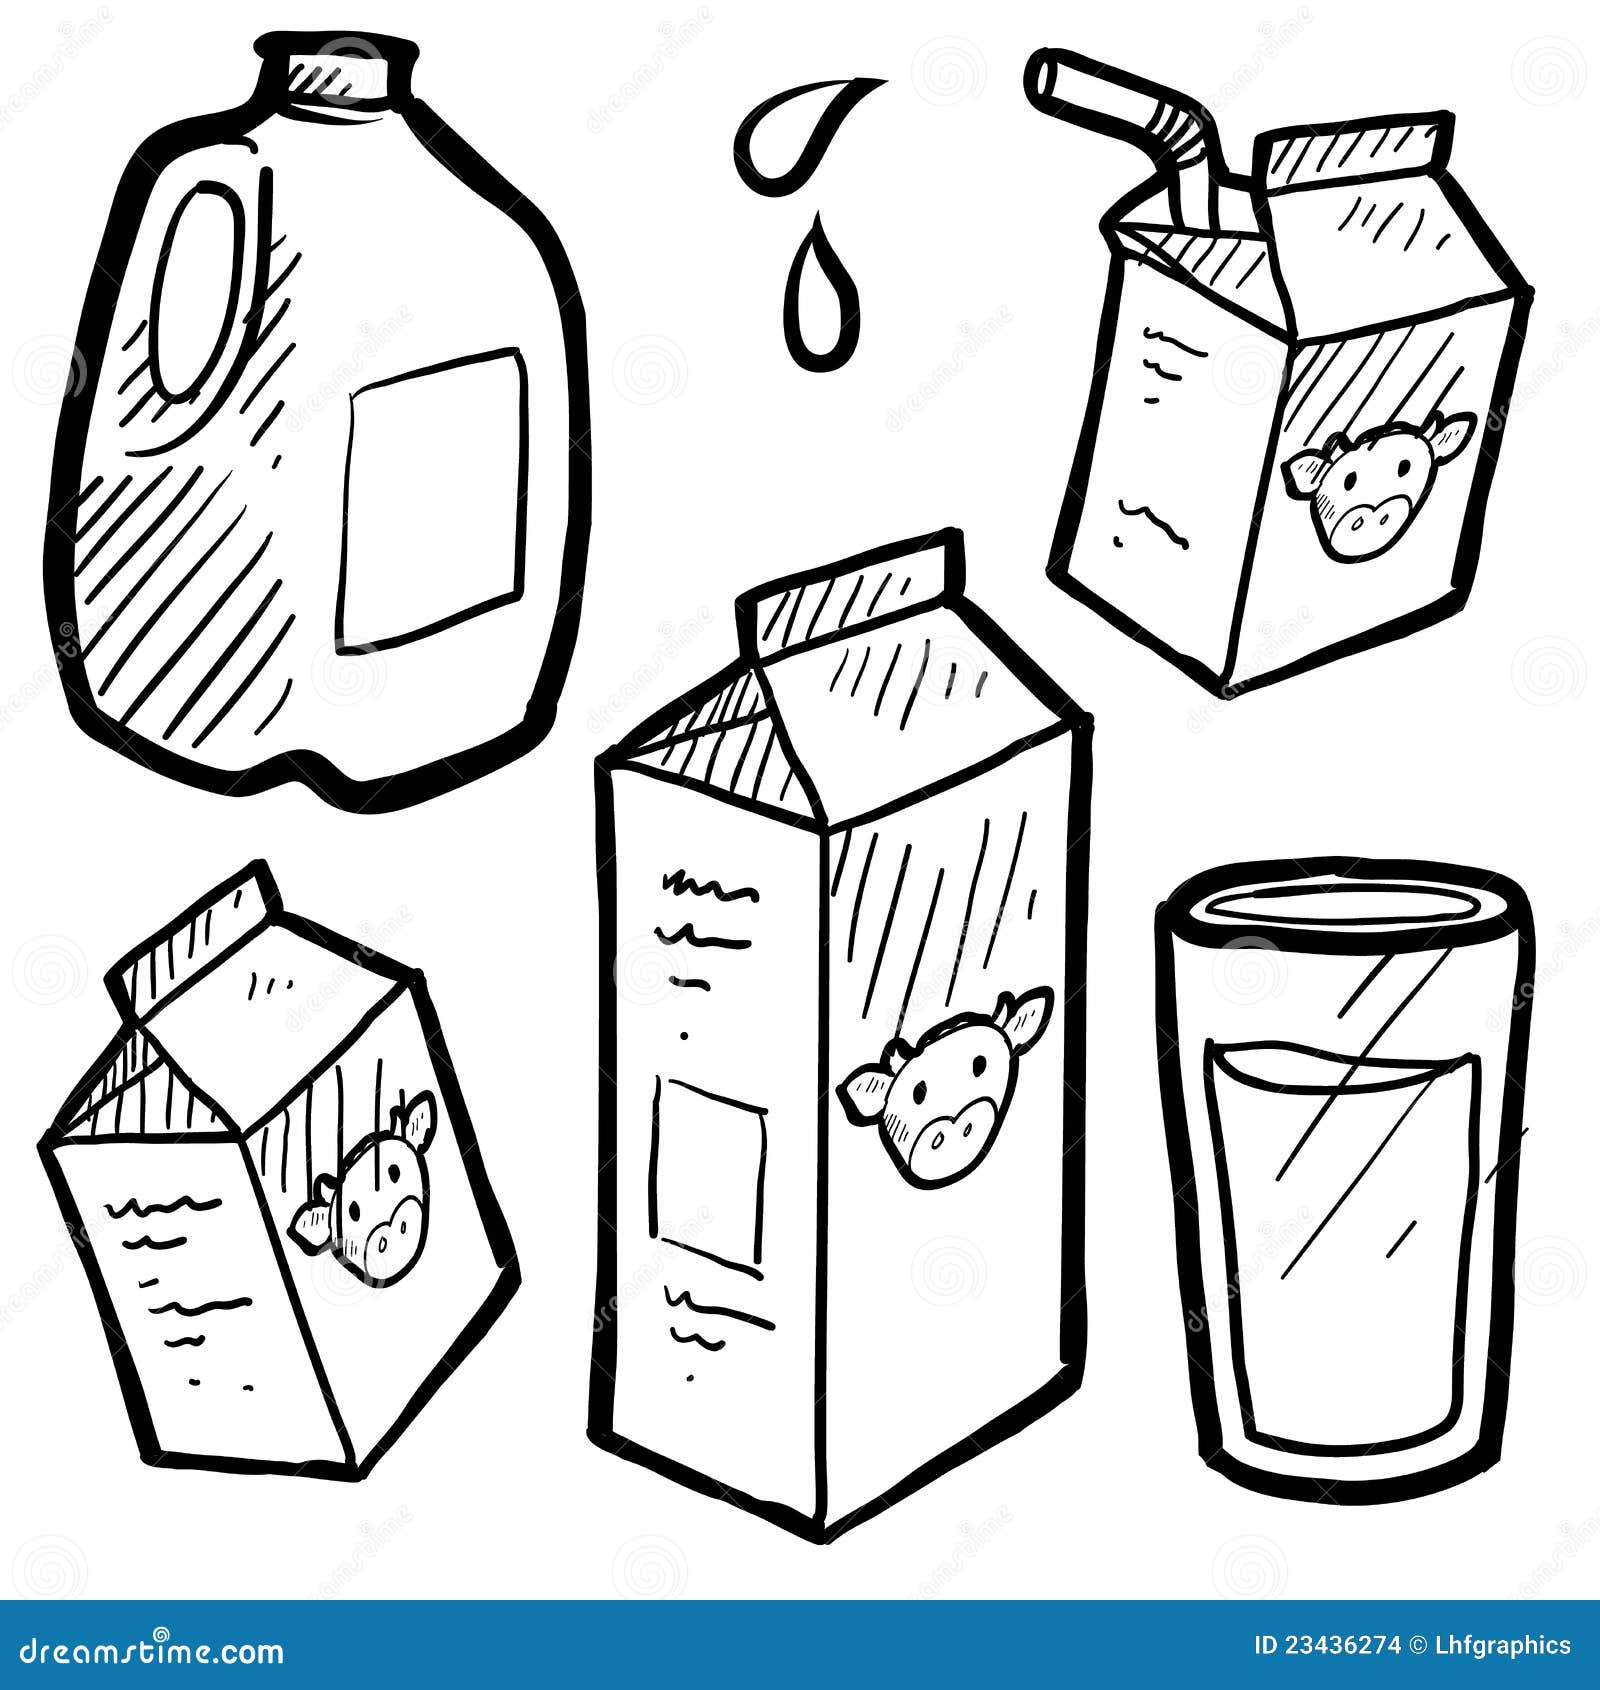  Milch  kartoniert Skizze vektor abbildung Illustration von 